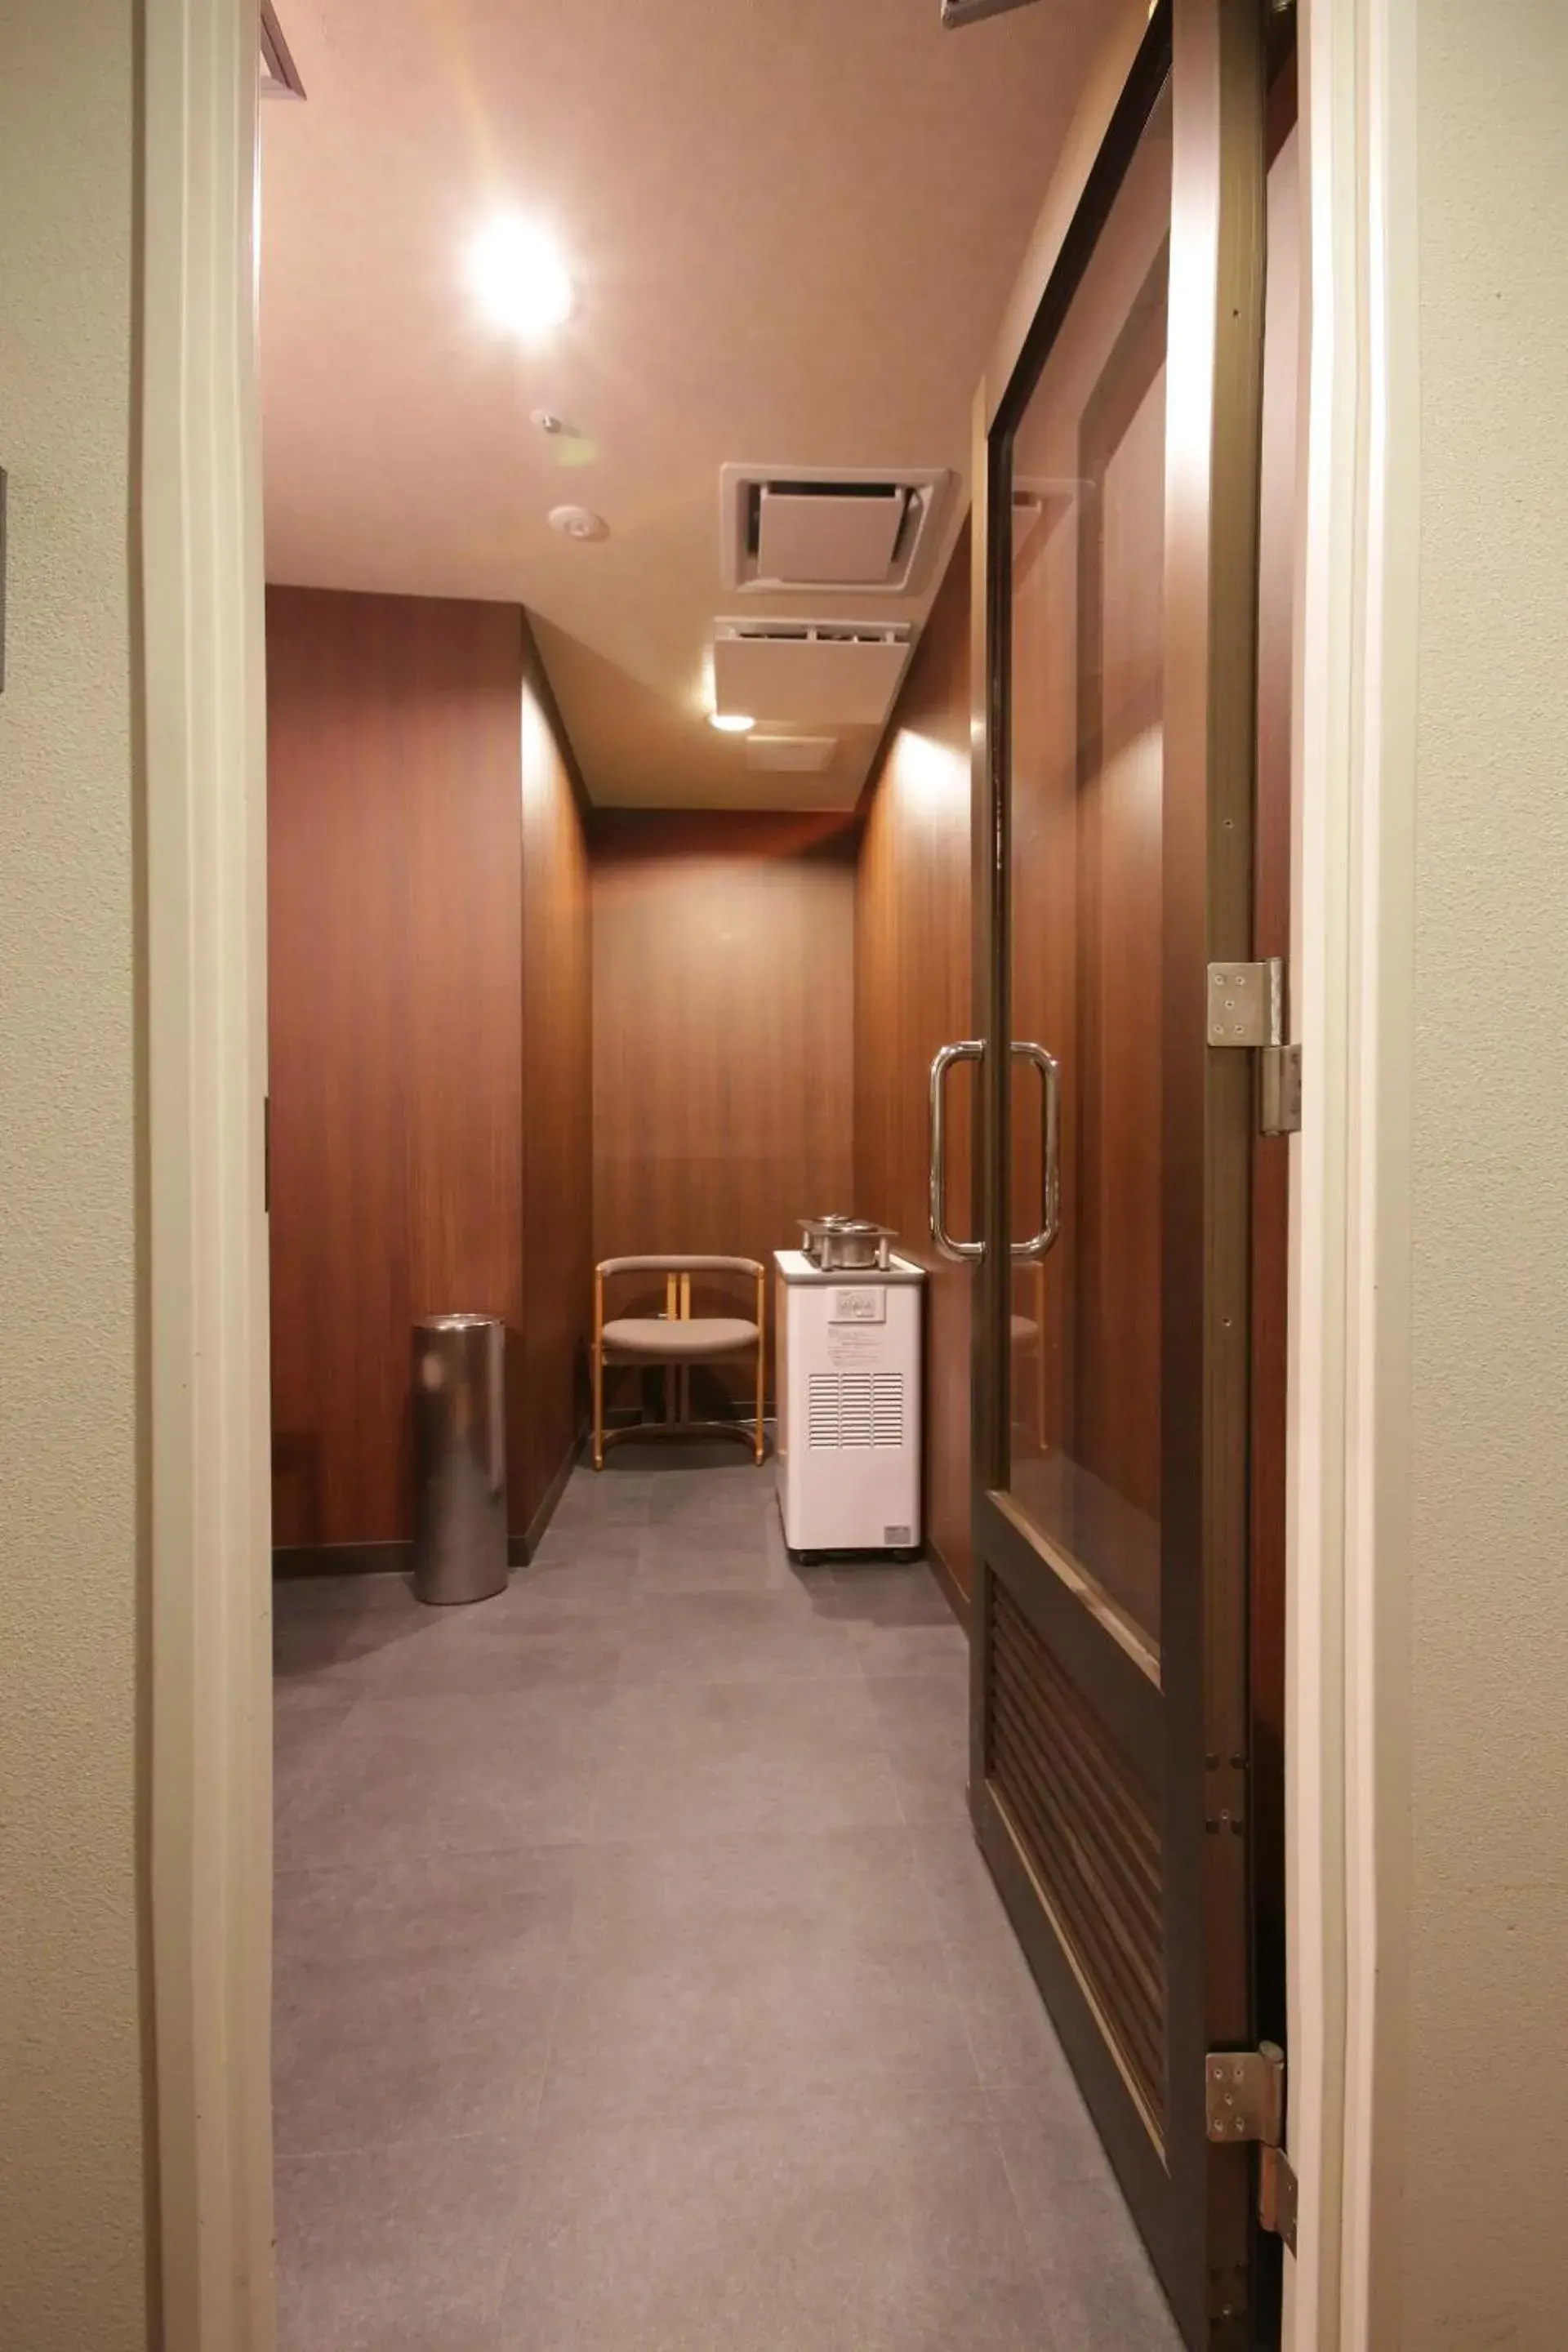 Area and facilities in Saito Hotel